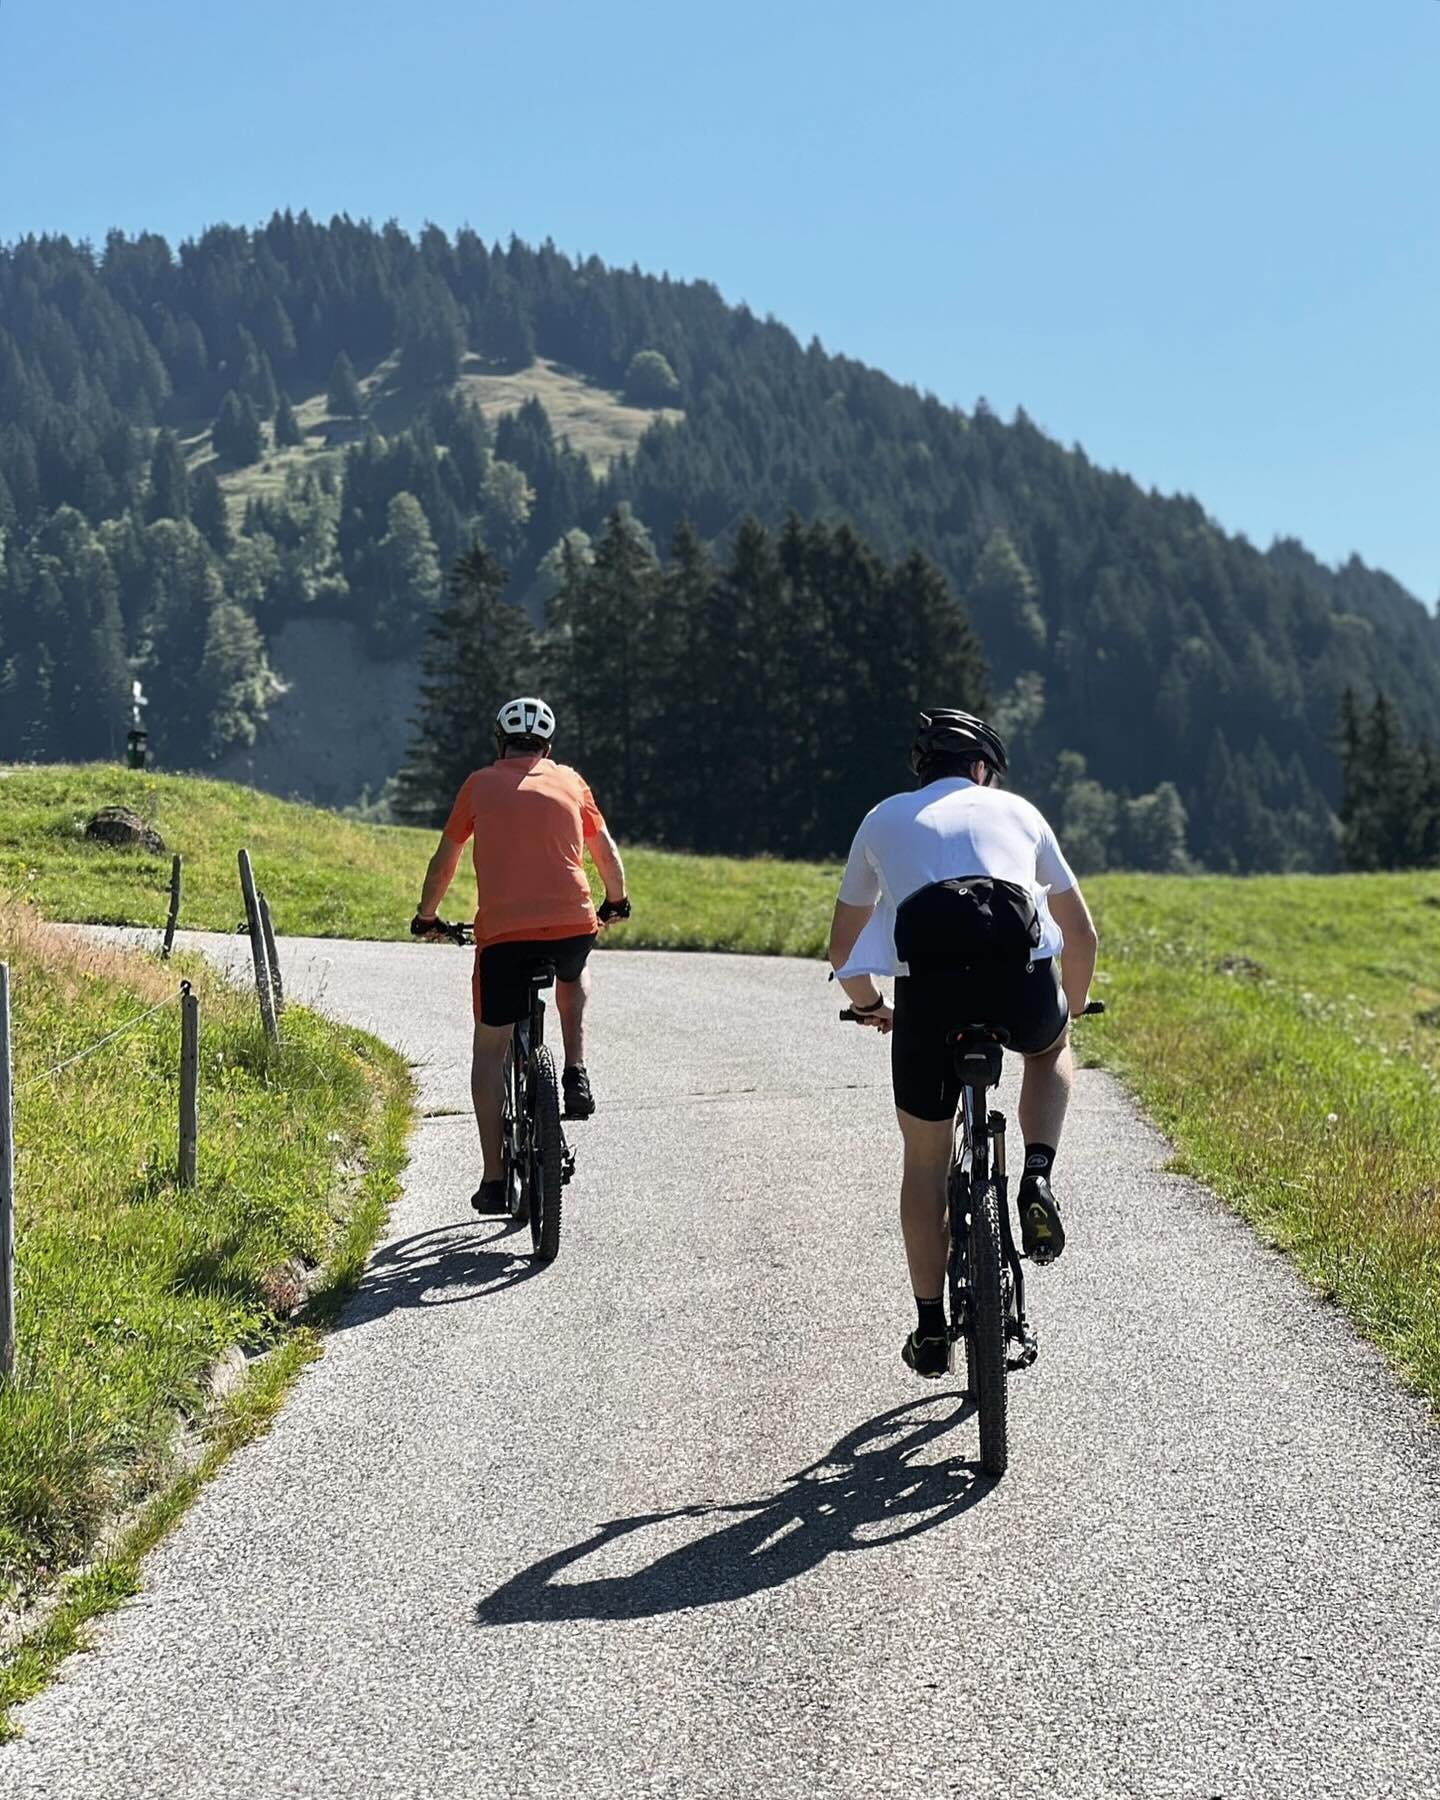 Raus in die Natur mit dem Mountain Bike ⛰️🌱Das Beste: Viele Touren starten direkt hinter unserer BergInsel ☀️🚵🏼

#berginselmoments #chaletberginsel #alps #oberallgäu #lifestyle #chalet #chalets #chaletlife #oberallgäu #hörnerdörfer #alpen #bal